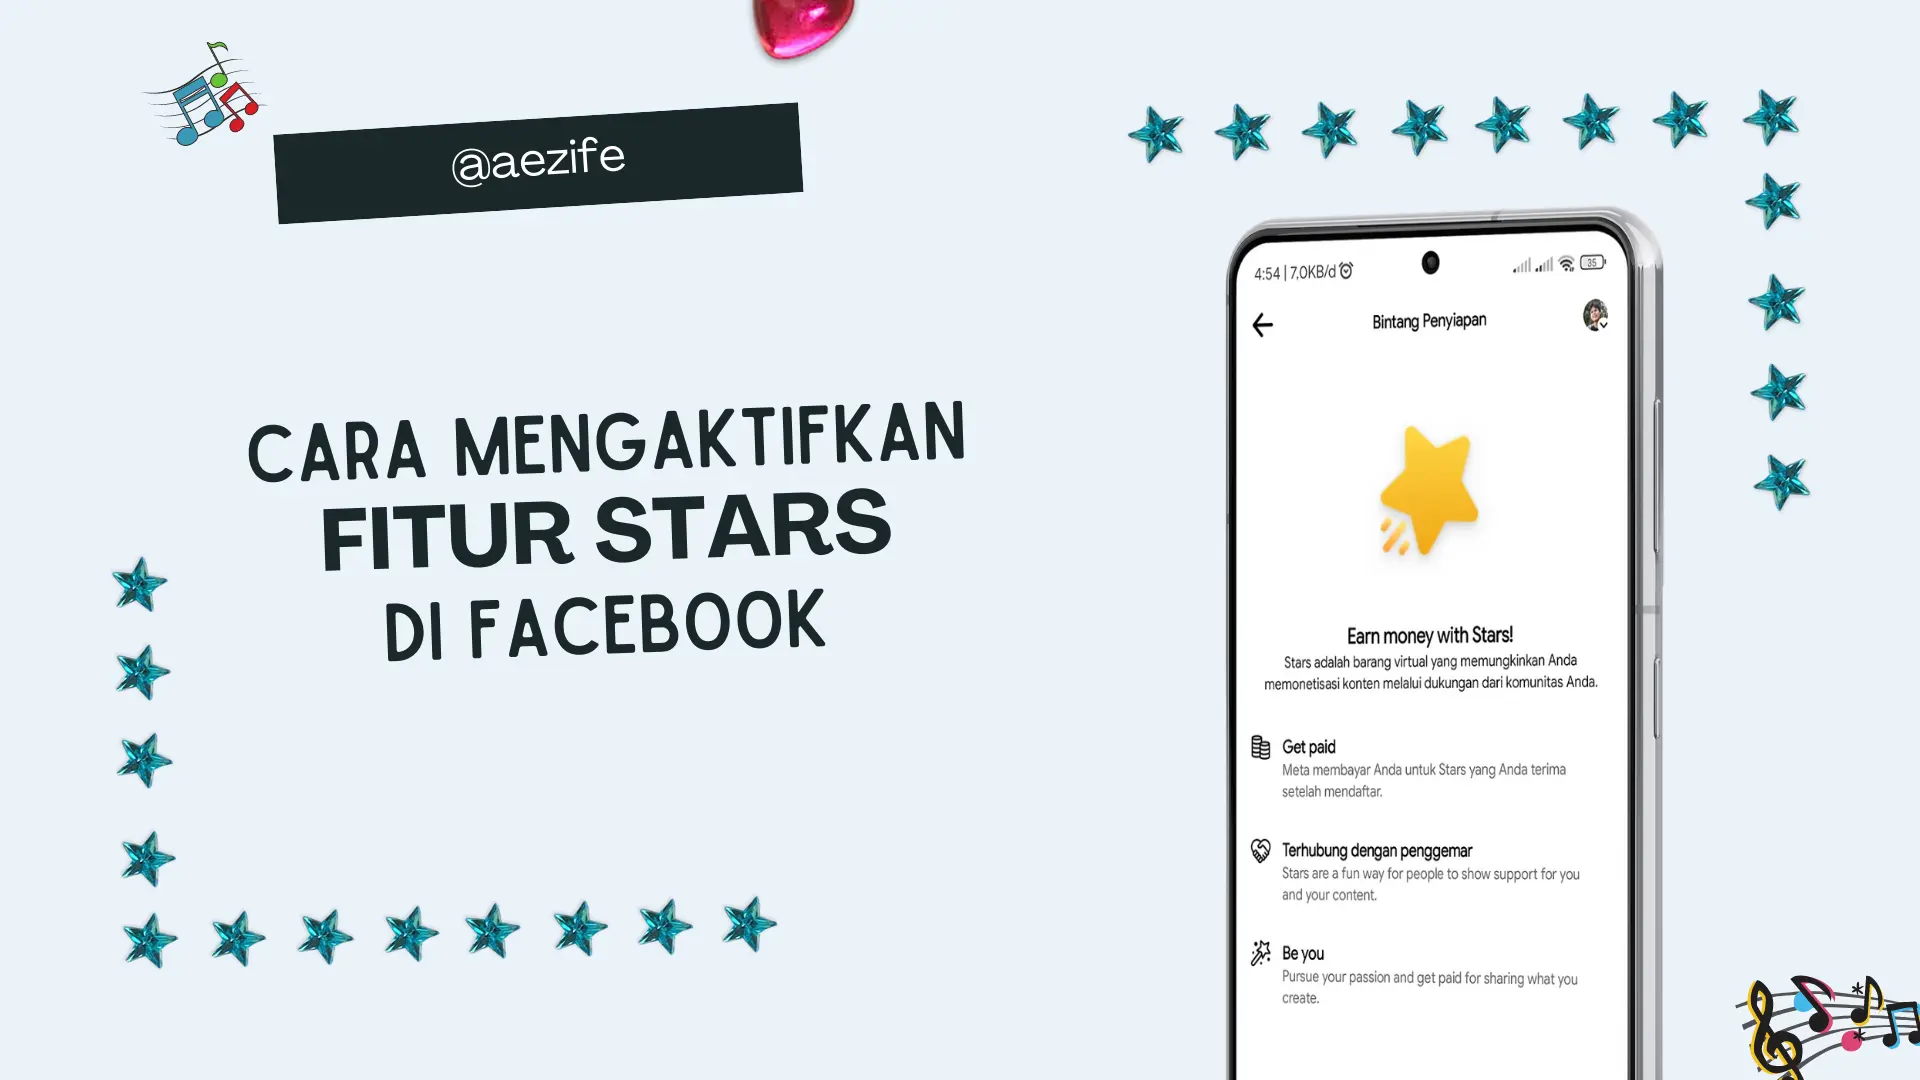 Cara Mengaktifkan Fitur Stars di Facebook by aezife (COVER)